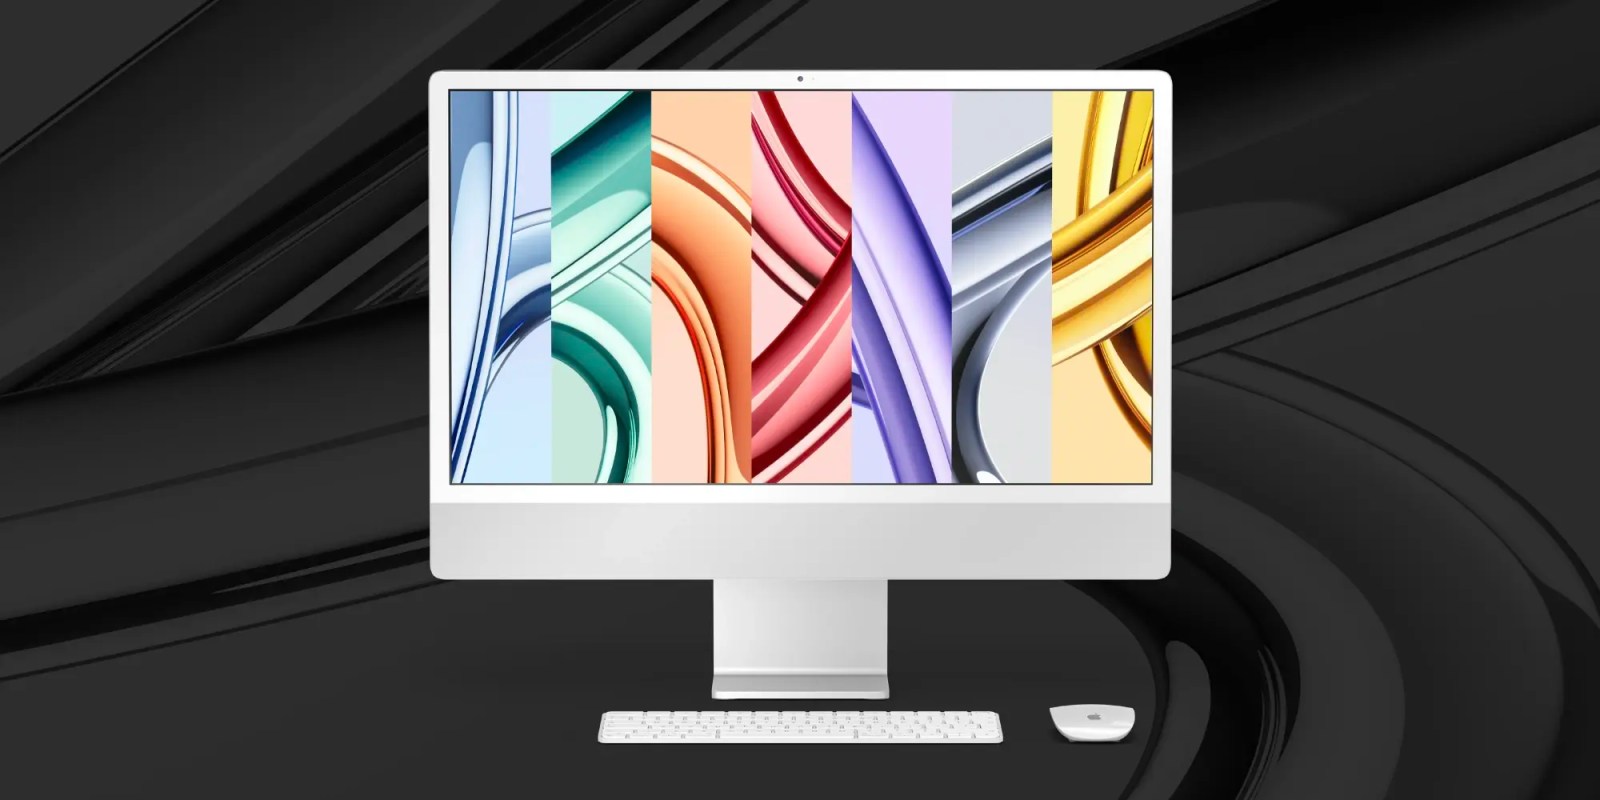 Загрузите новые обои для M3 iMac и M3 MacBook Pro прямо здесь.